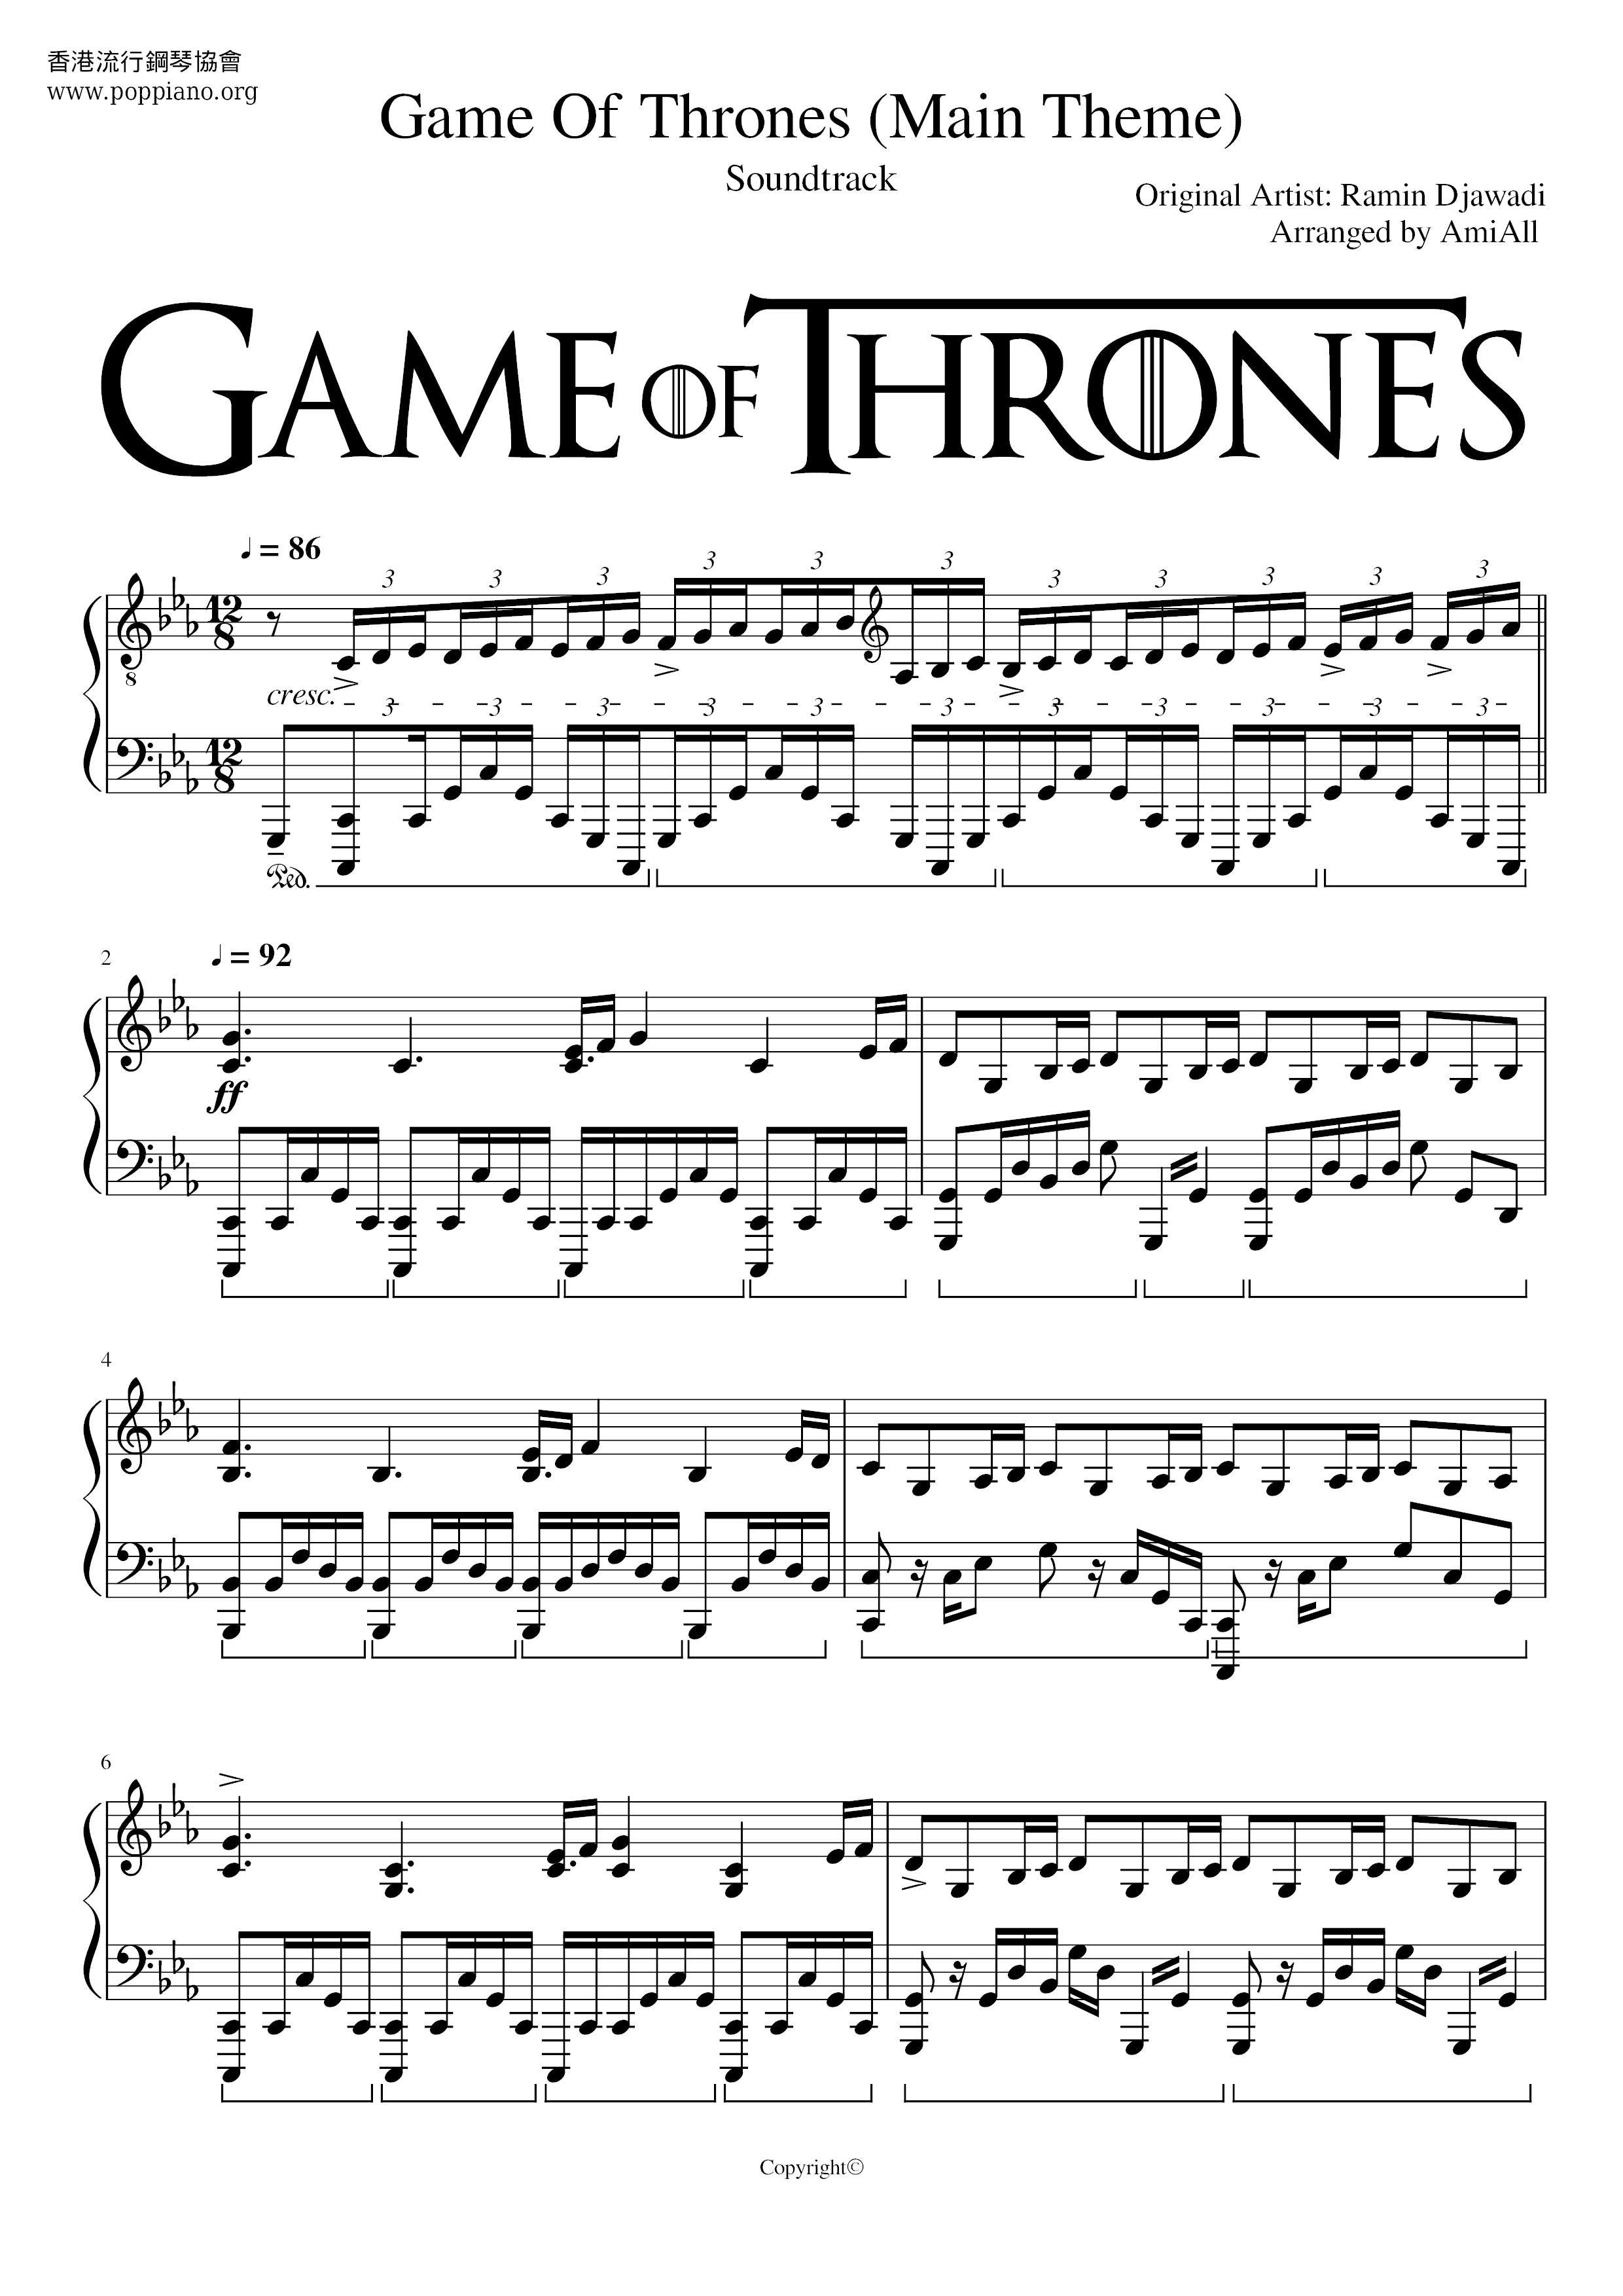 Game Of Thrones Score